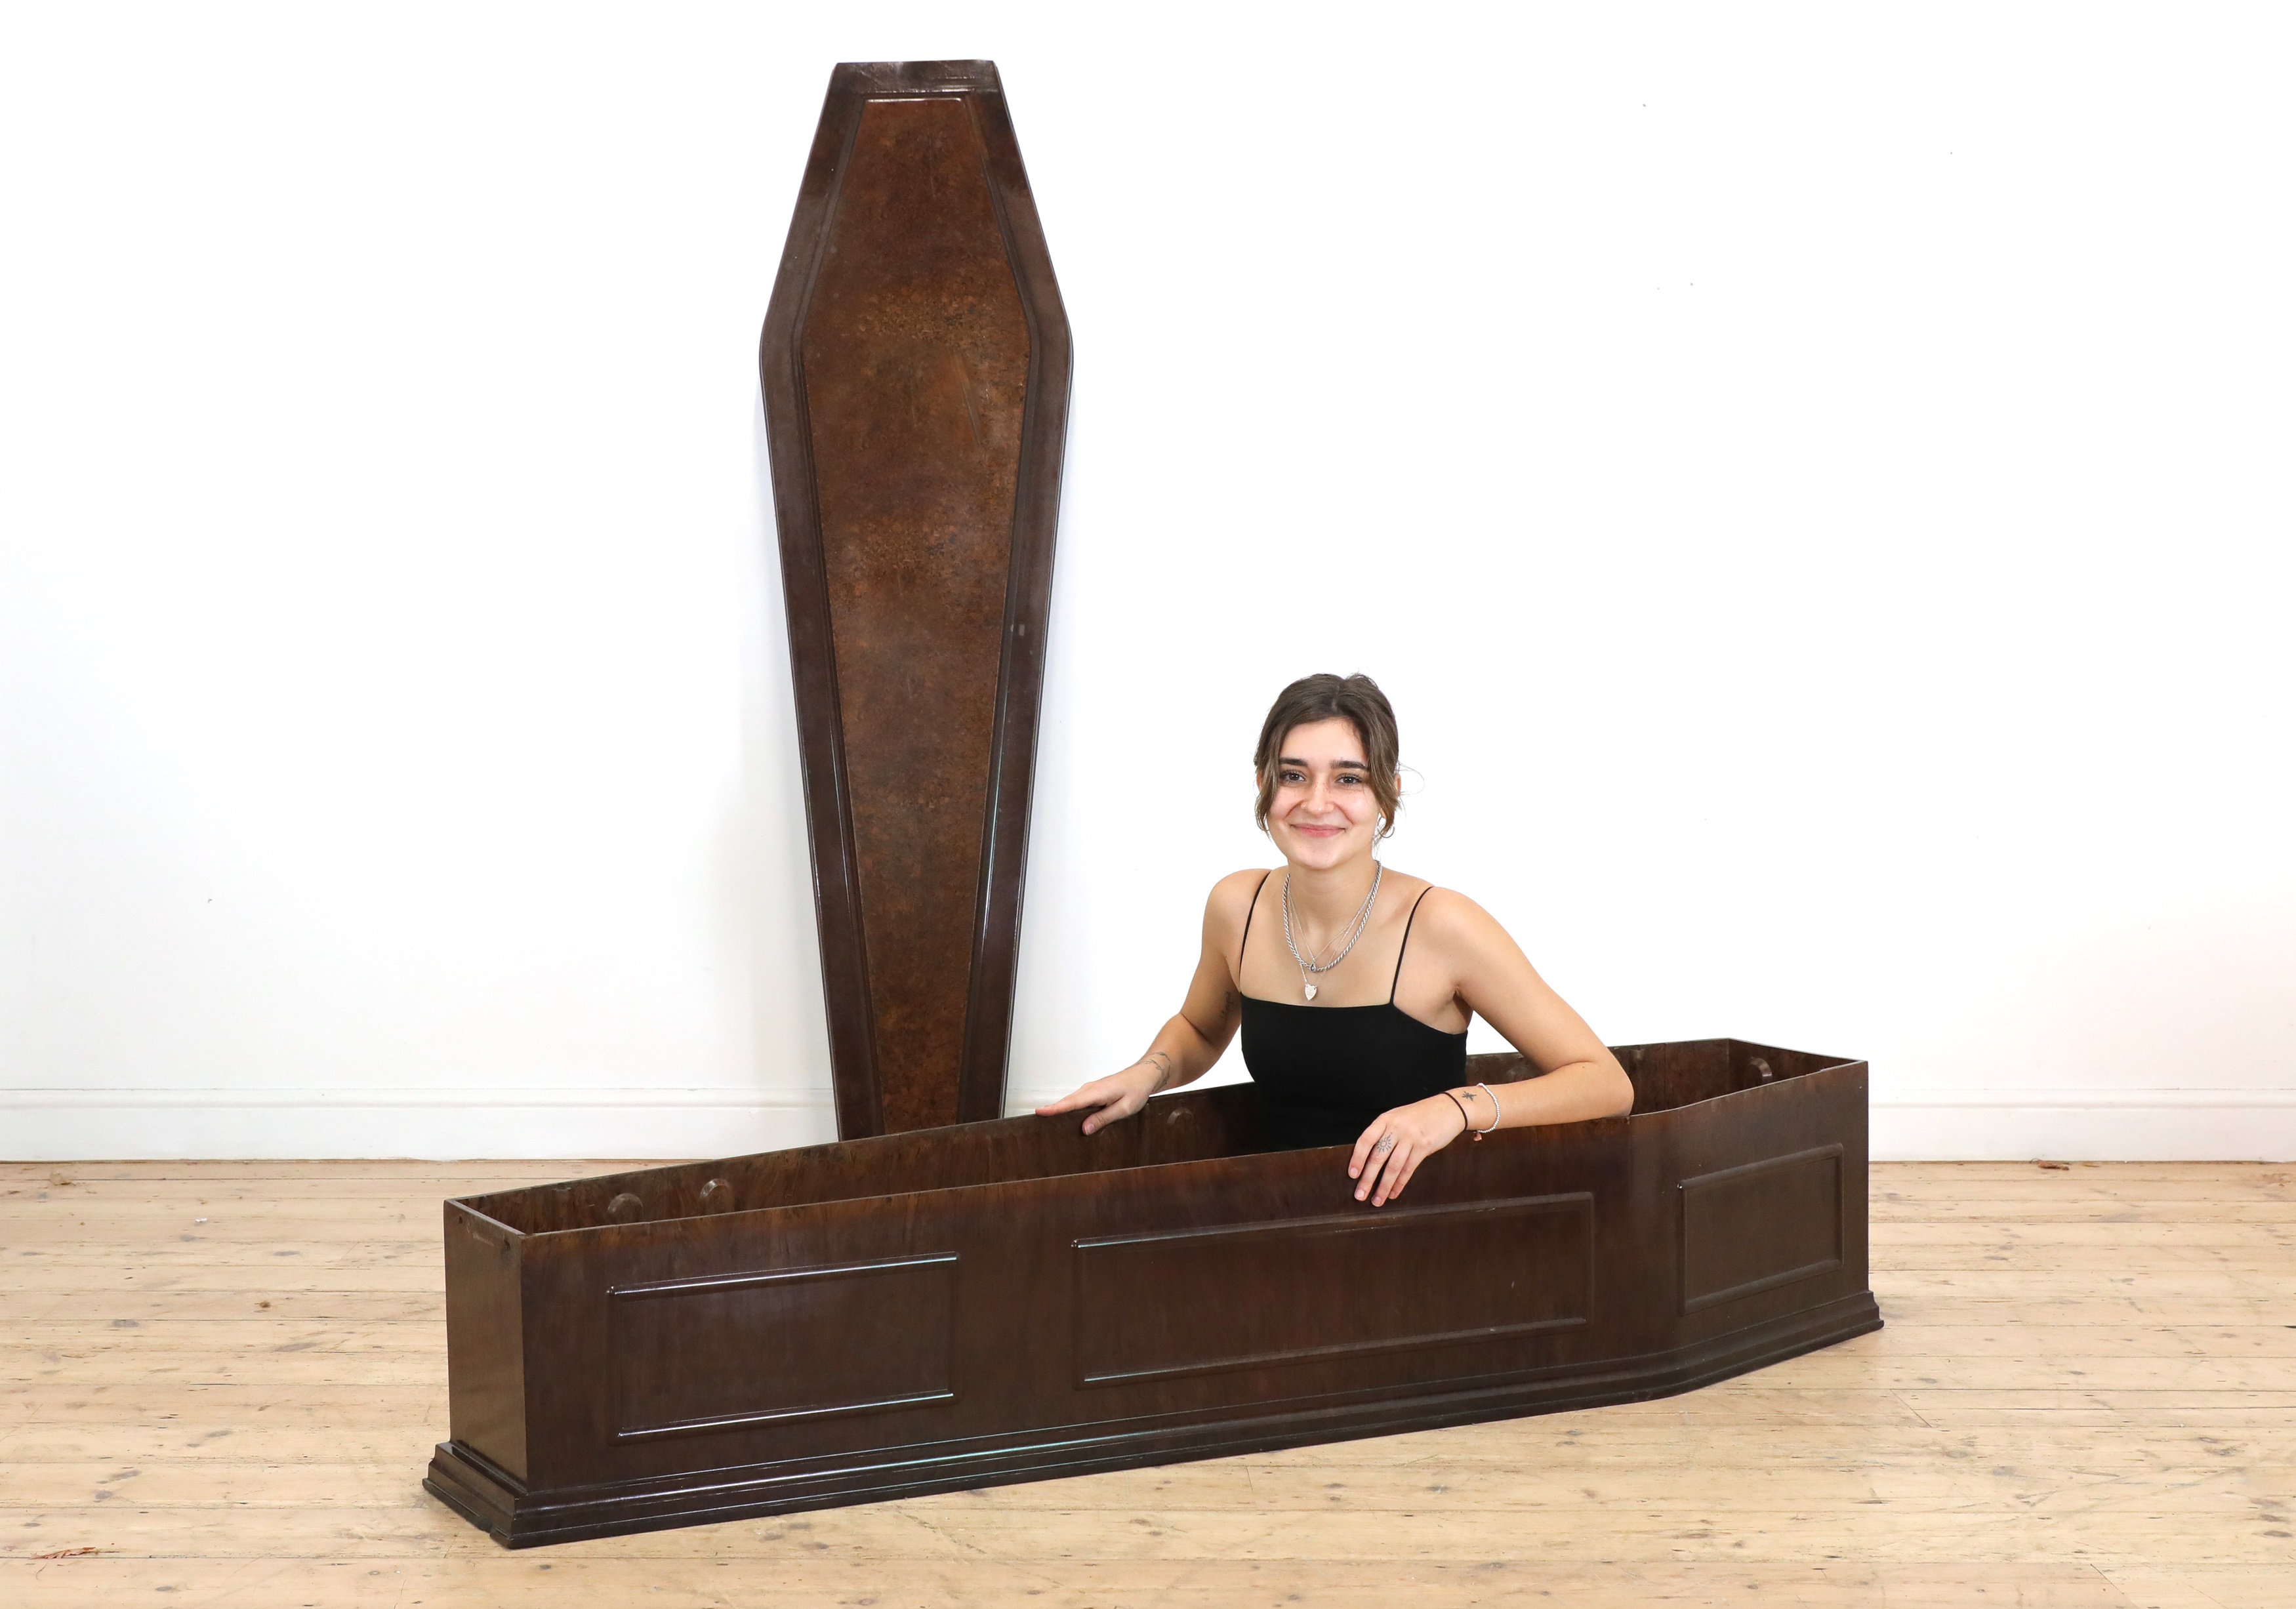 A rare full-sized Bakelite coffin